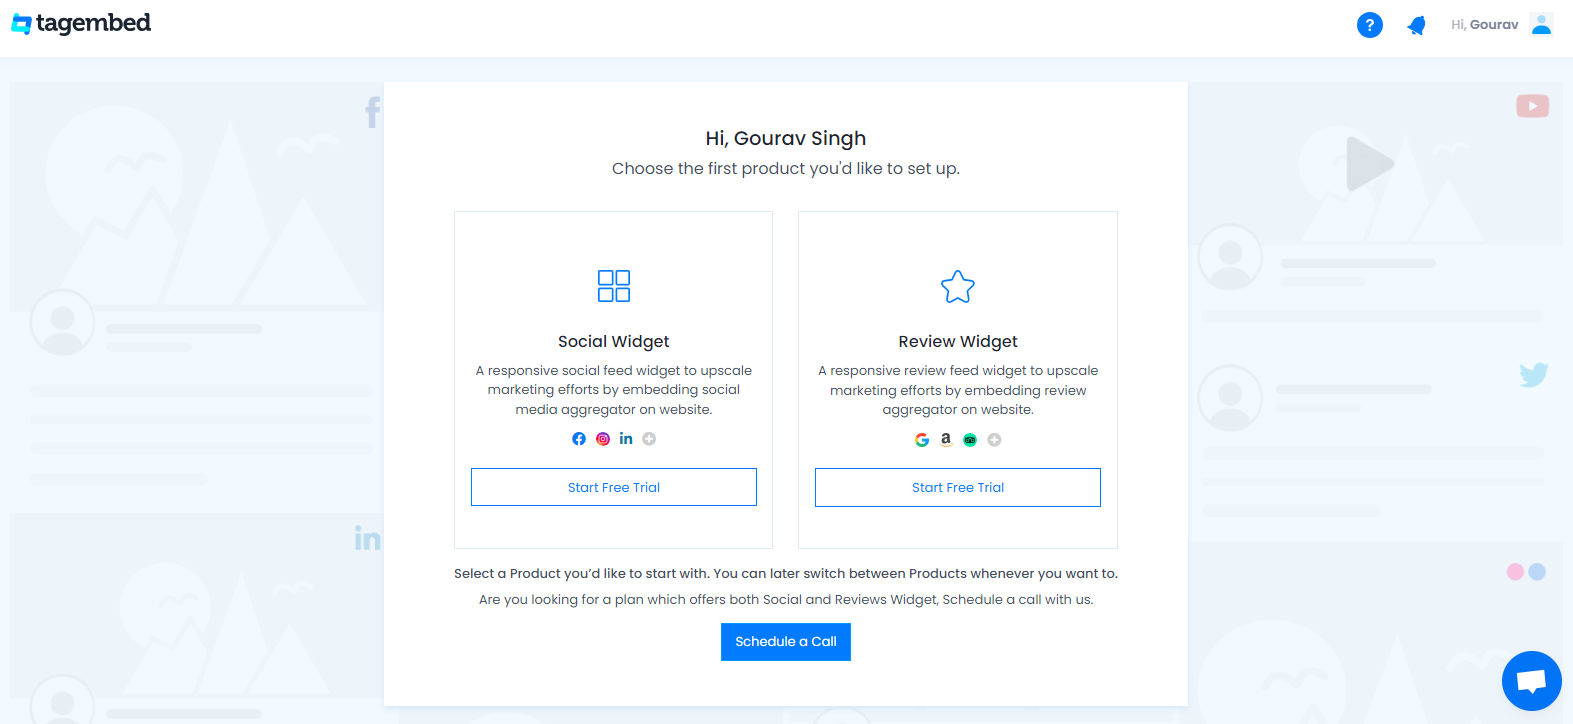 Social widget or Review widget